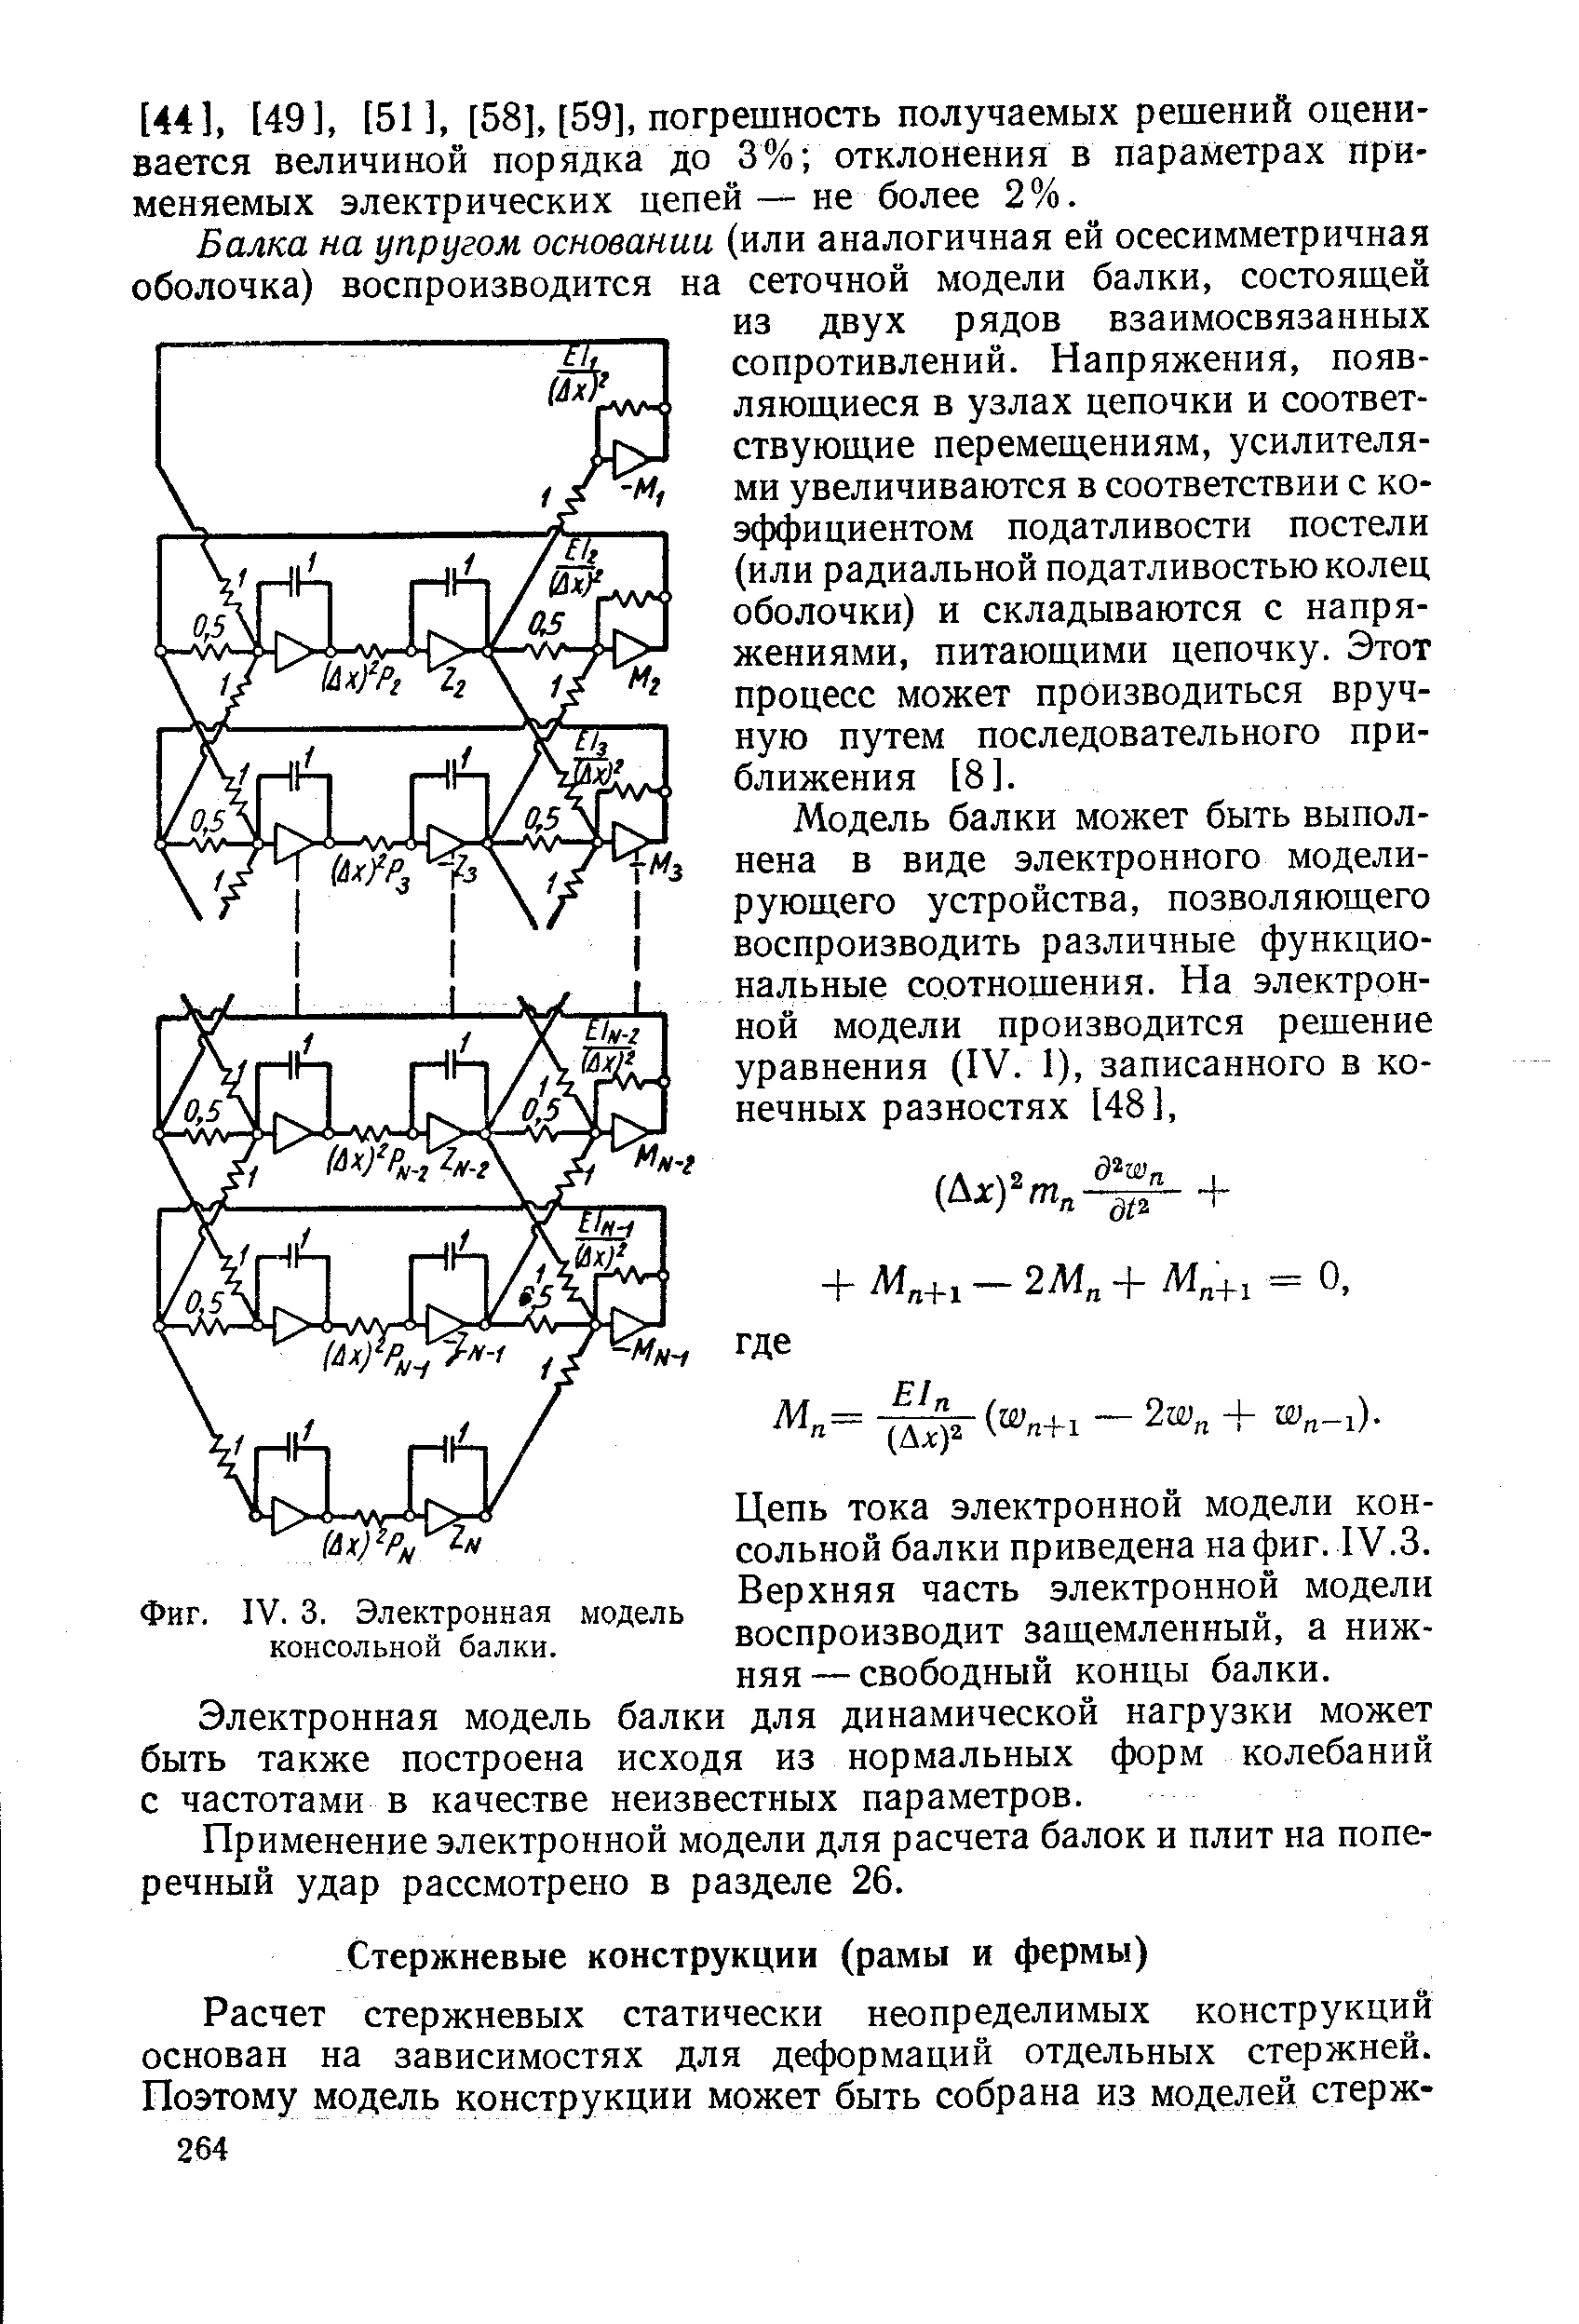 Фиг. IV. 3. Электронная модель консольной балки.
